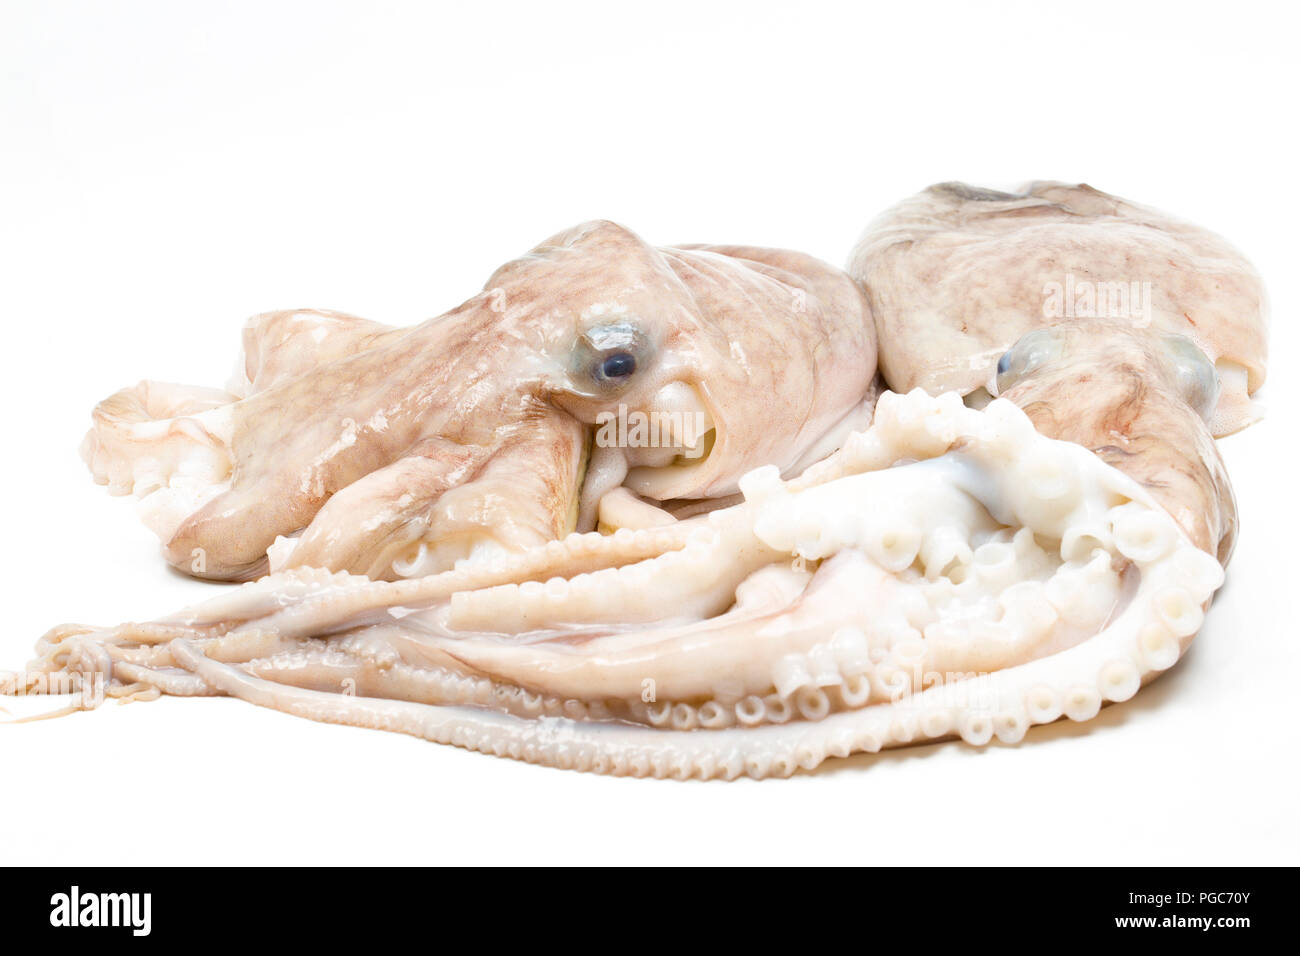 Une moindre ou recourbés, pieuvre, Eledone cirrhosa, qui a été pris dans un chalut dans les eaux britanniques et ont acheté à partir d'un comptoir de poissons dans un supermarché. Le l Banque D'Images